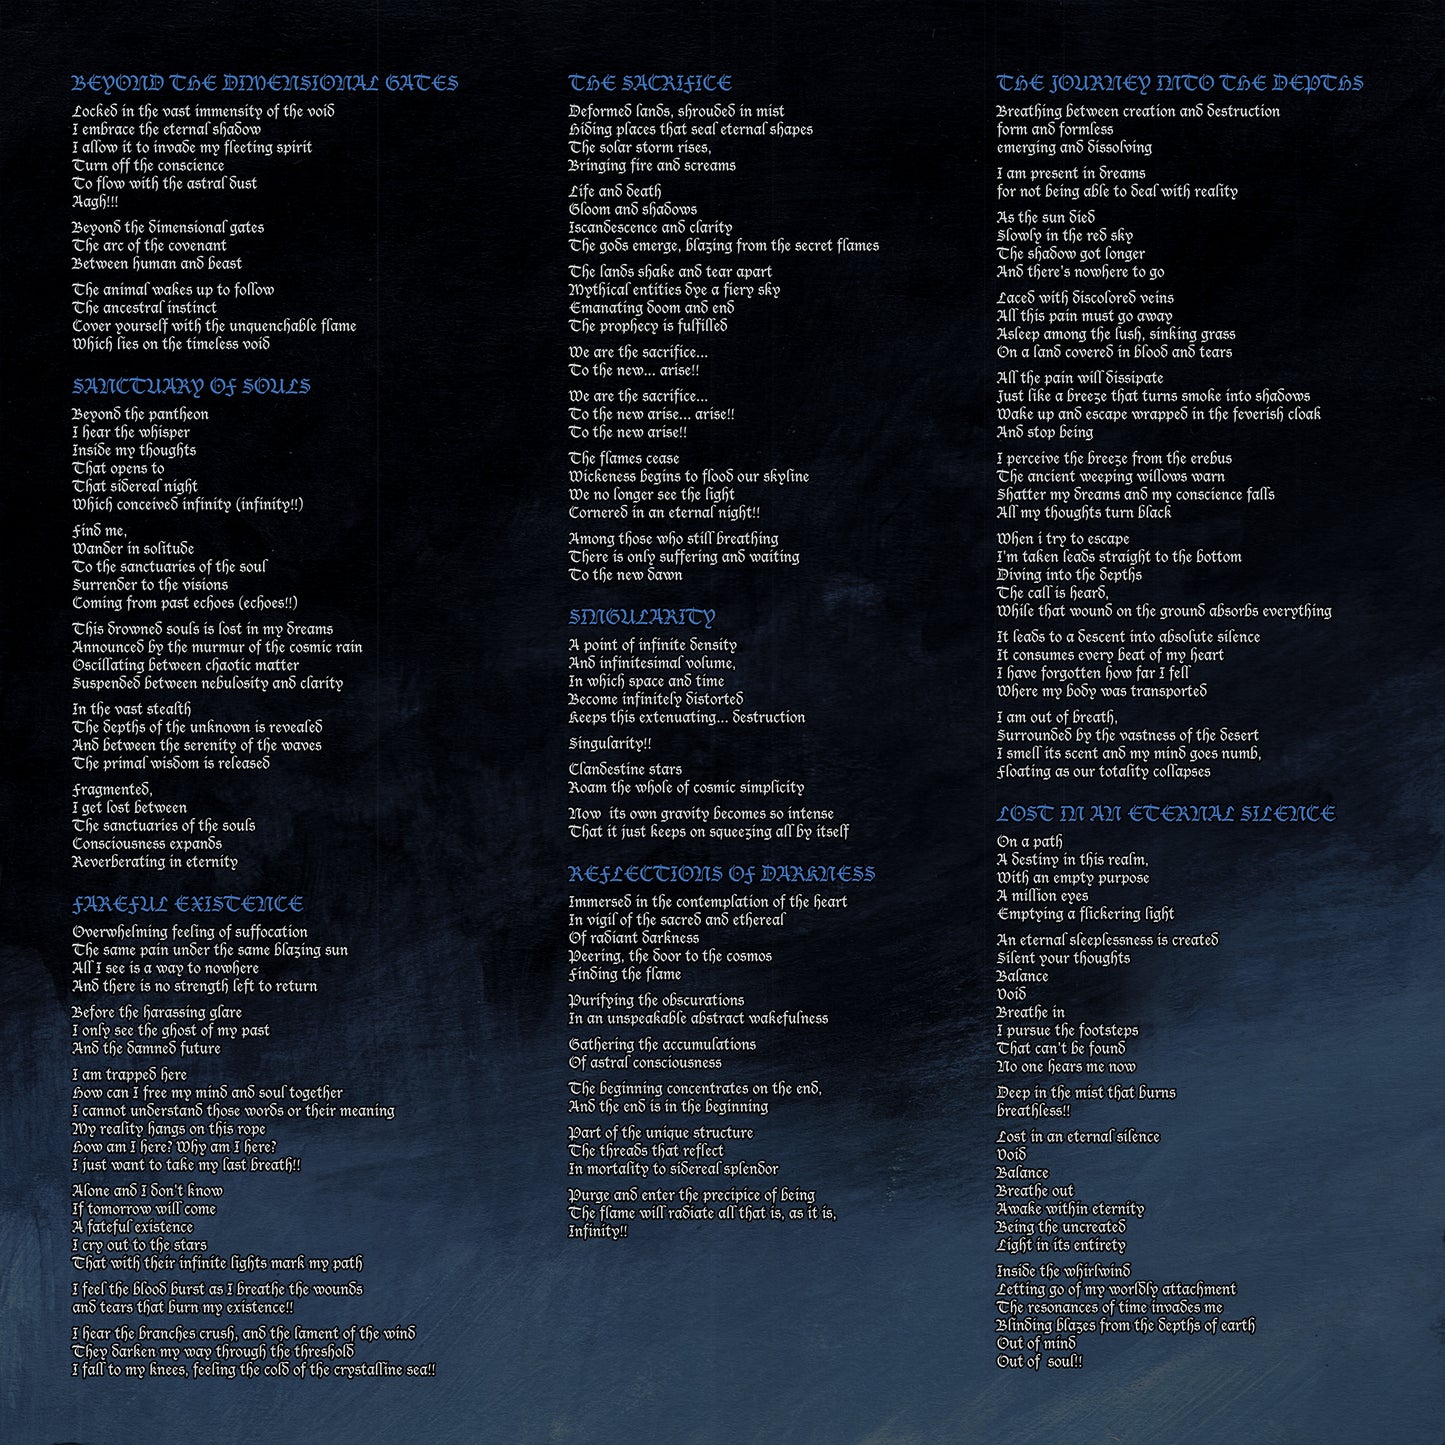 Blood Oath - Lost in an Eternal Silence 12" LP  PRE-ORDER